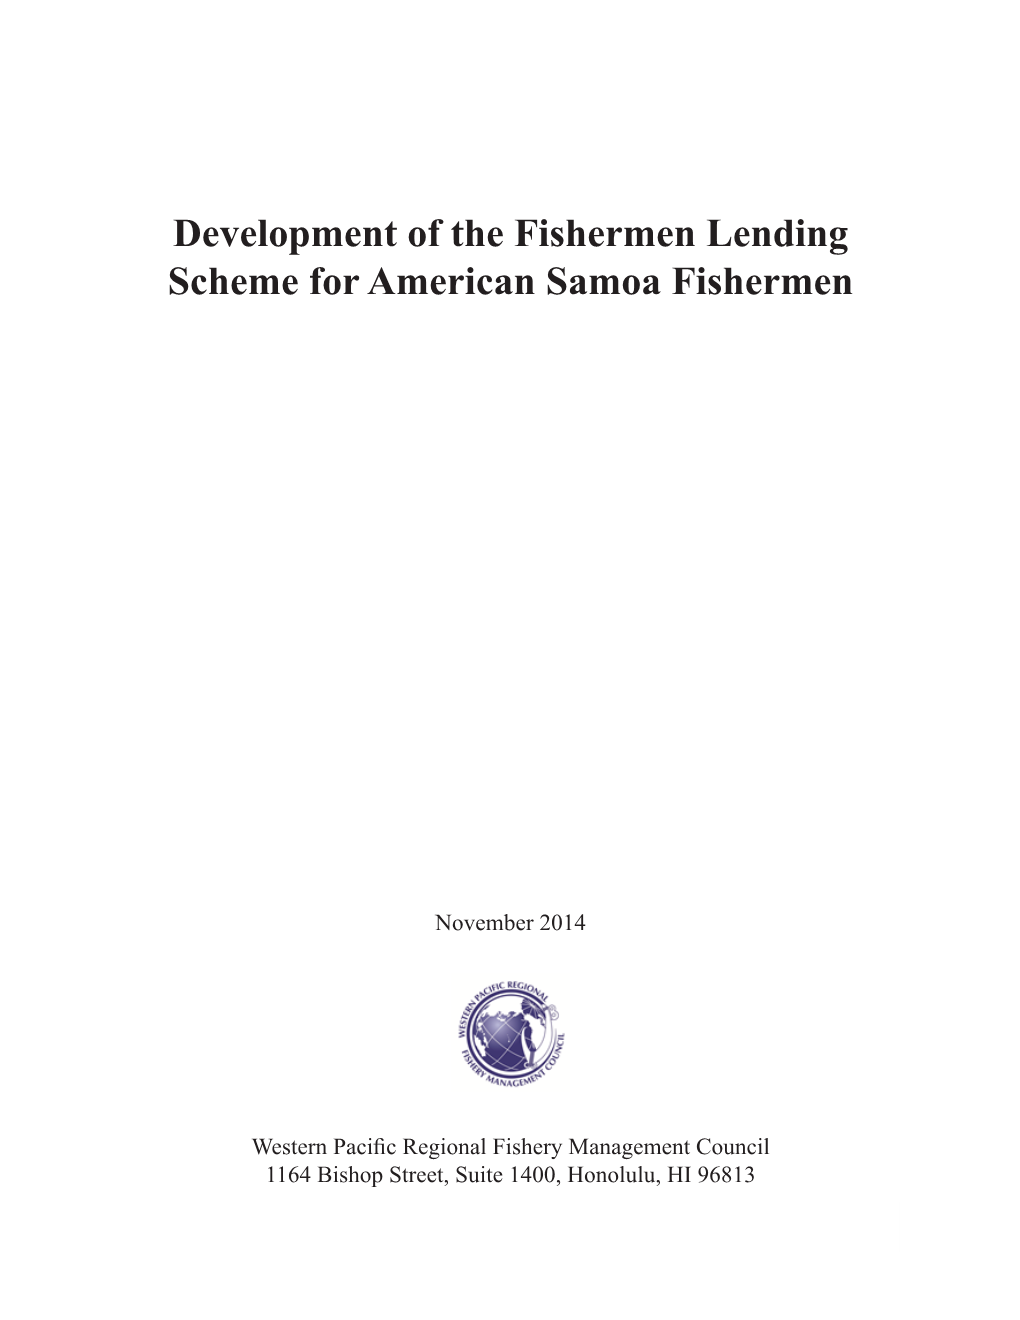 Development of the Fishermen Lending Scheme for American Samoa Fishermen